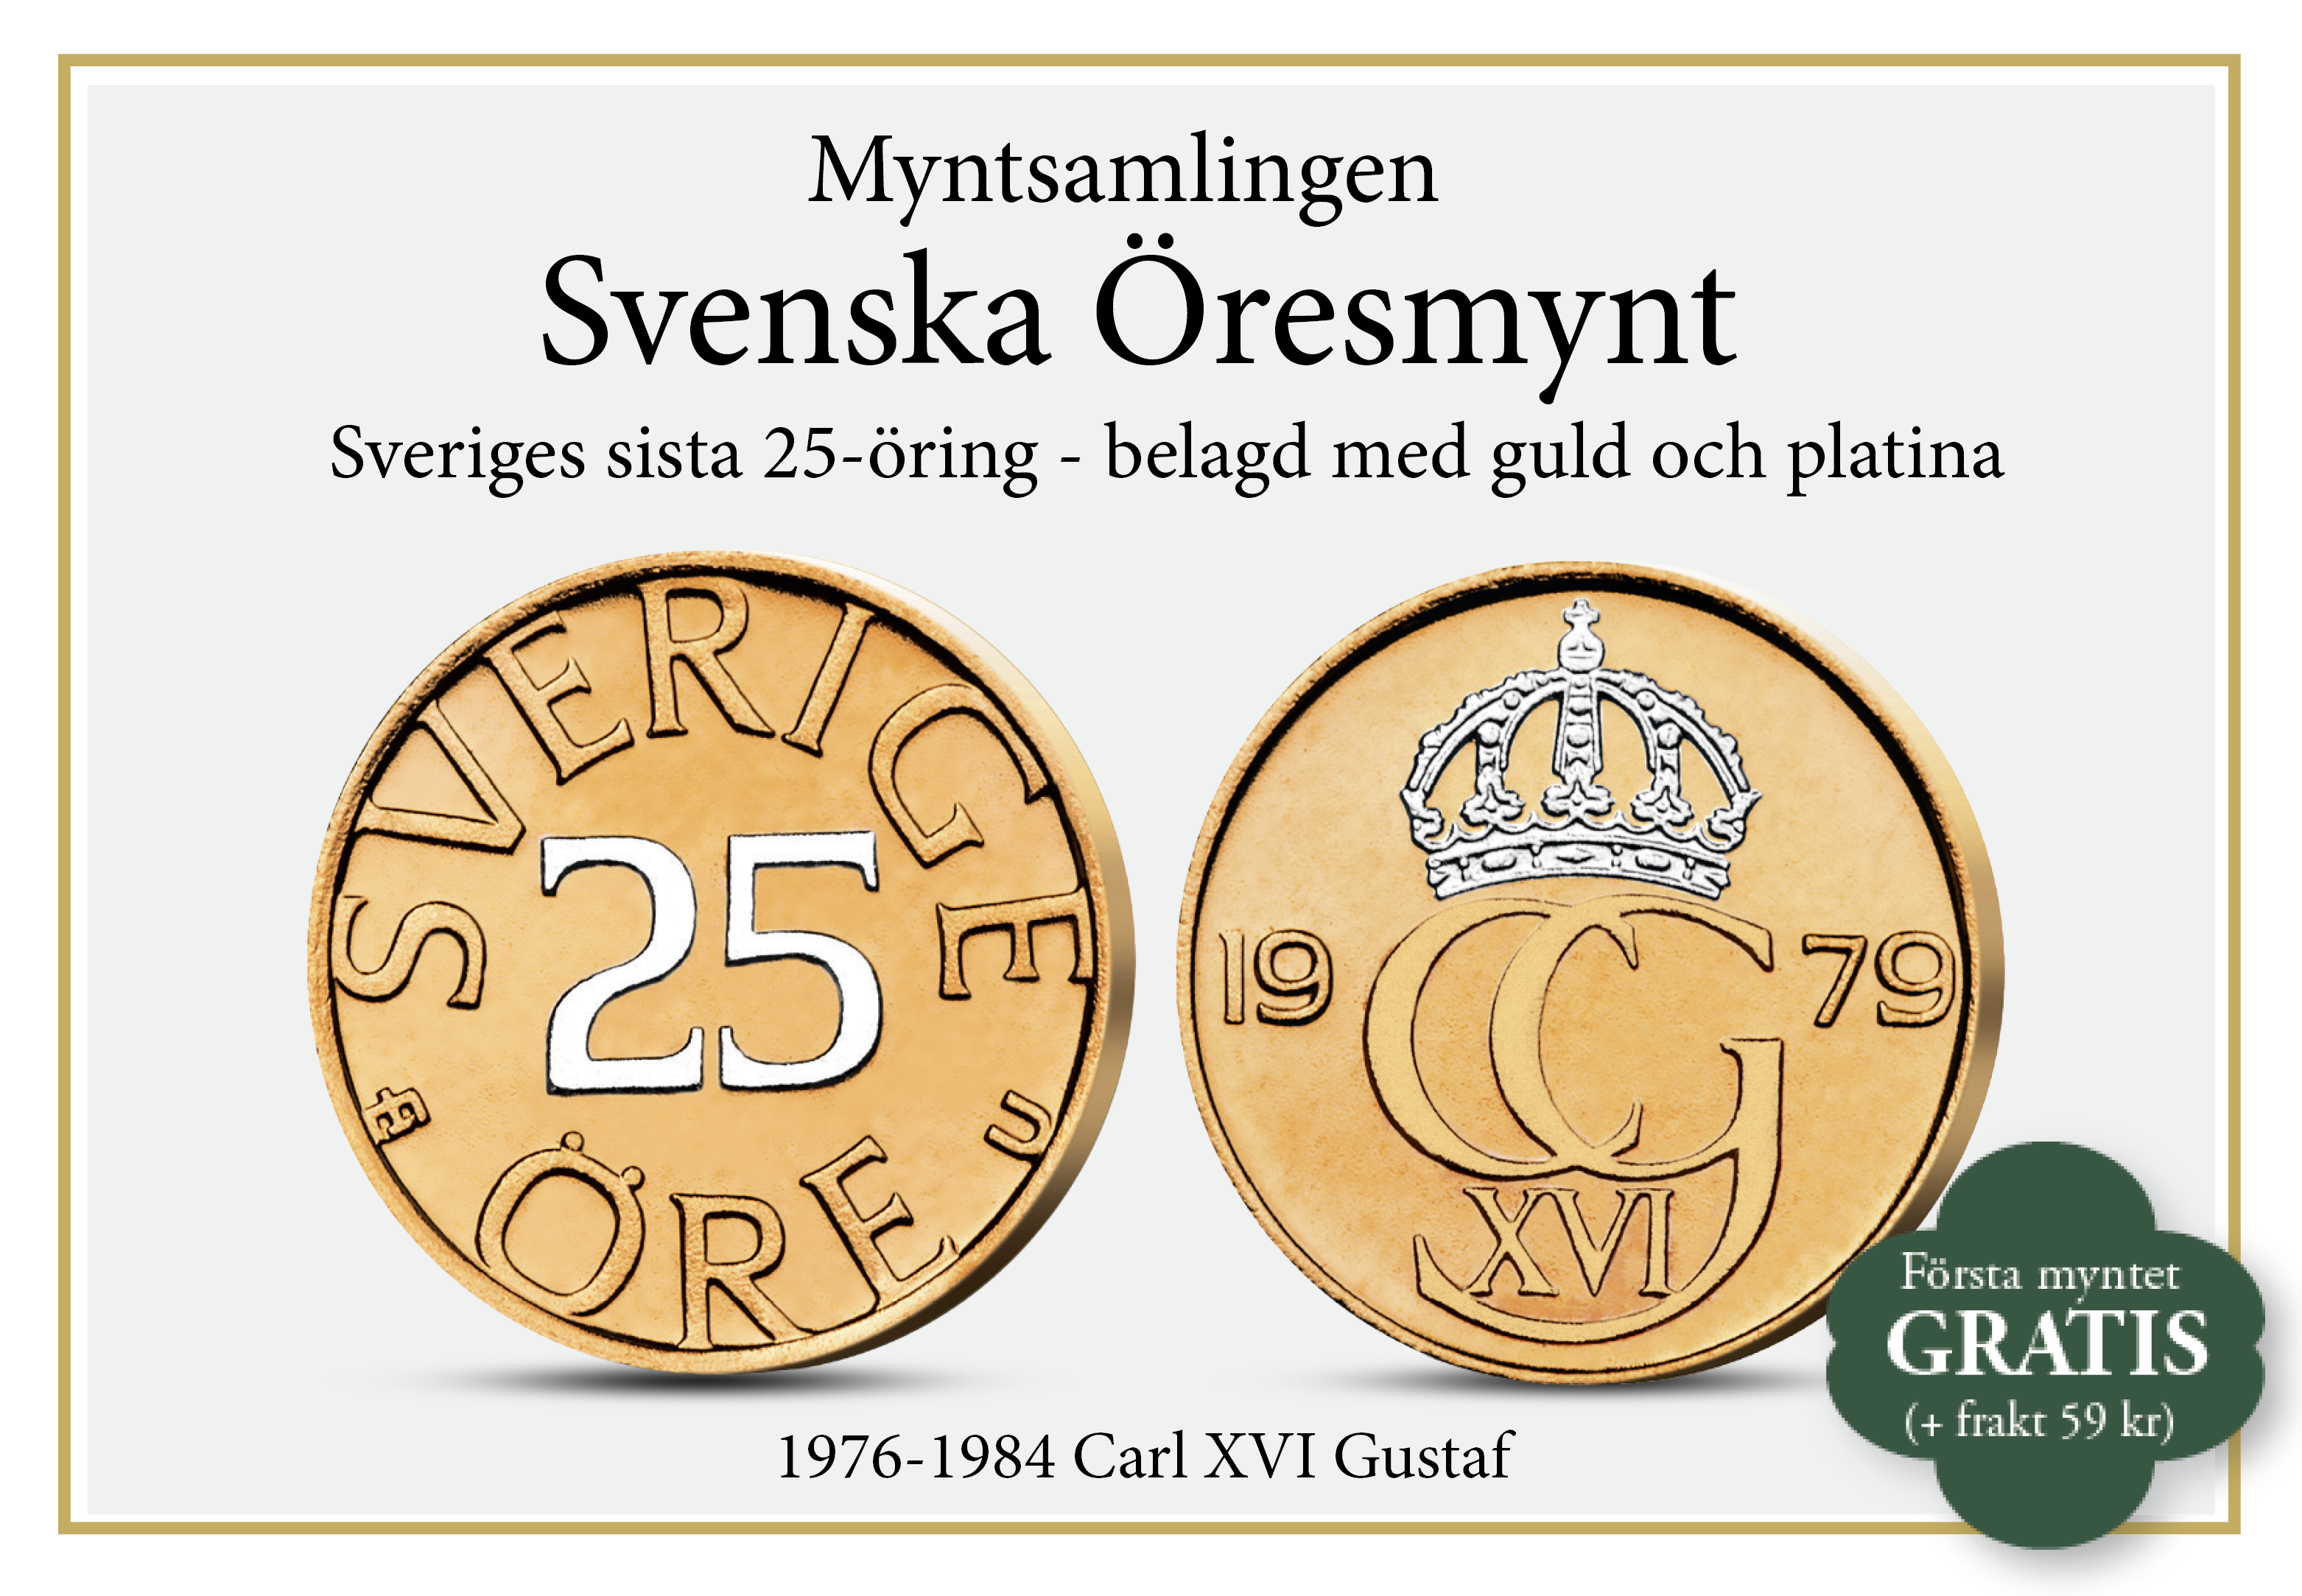 Sveriges sista 25-öring - belagd med guld och platina